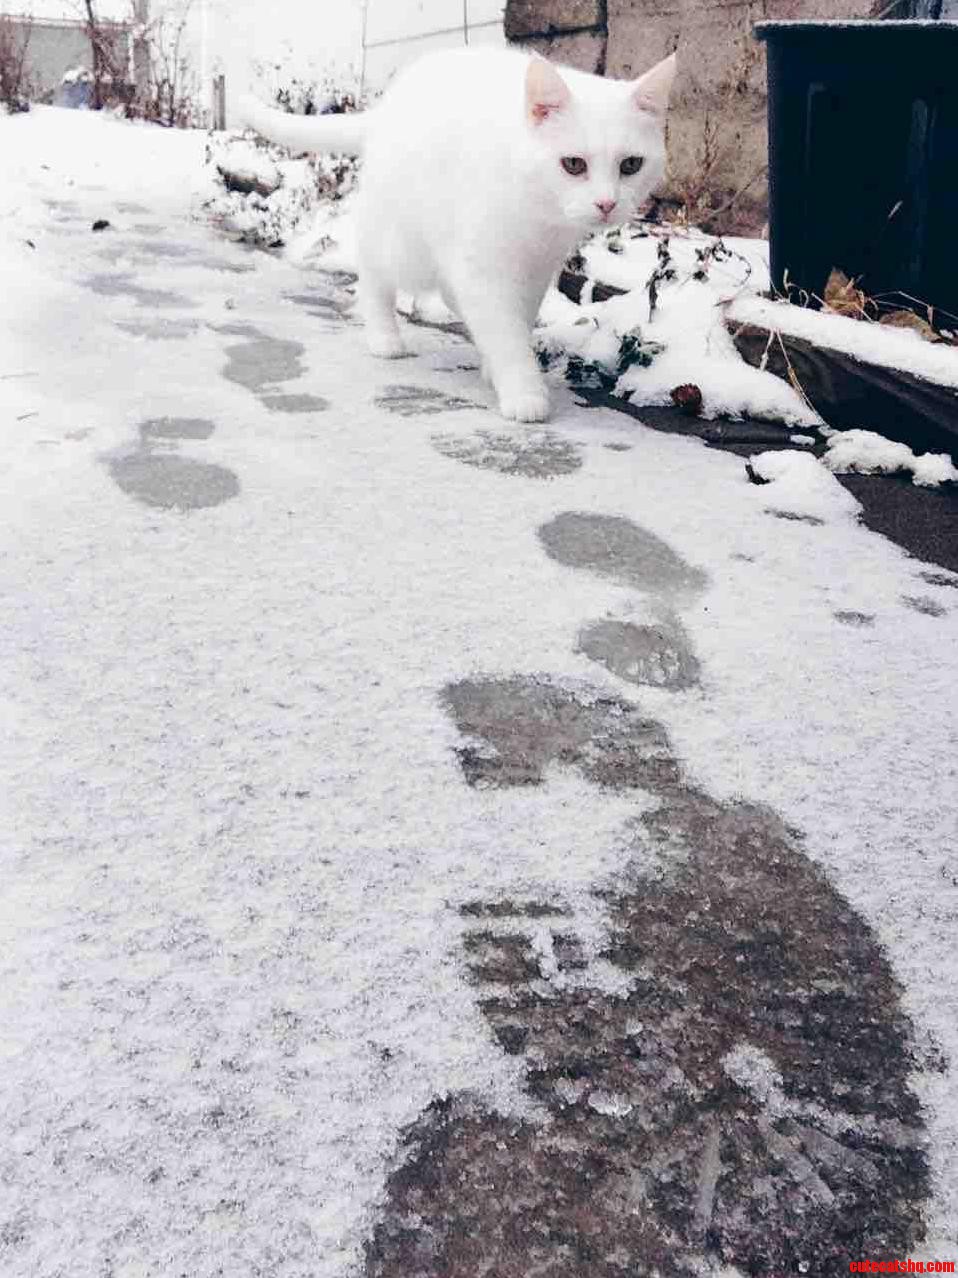 Snow cat